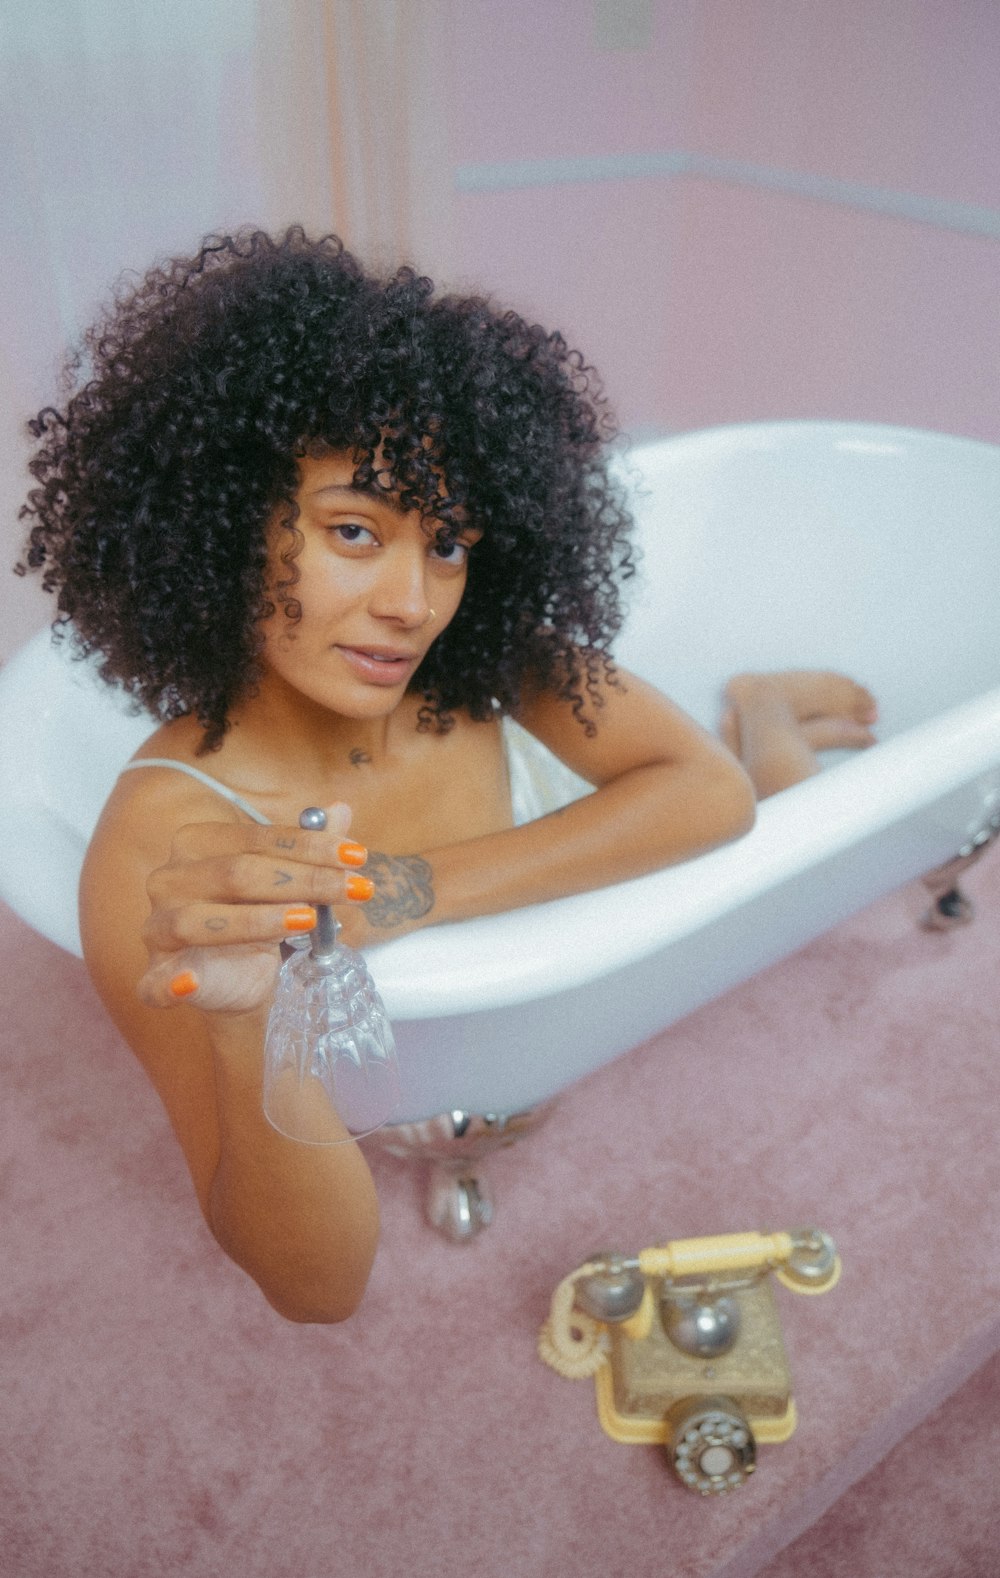 Una donna seduta in una vasca da bagno con un telefono accanto a lei